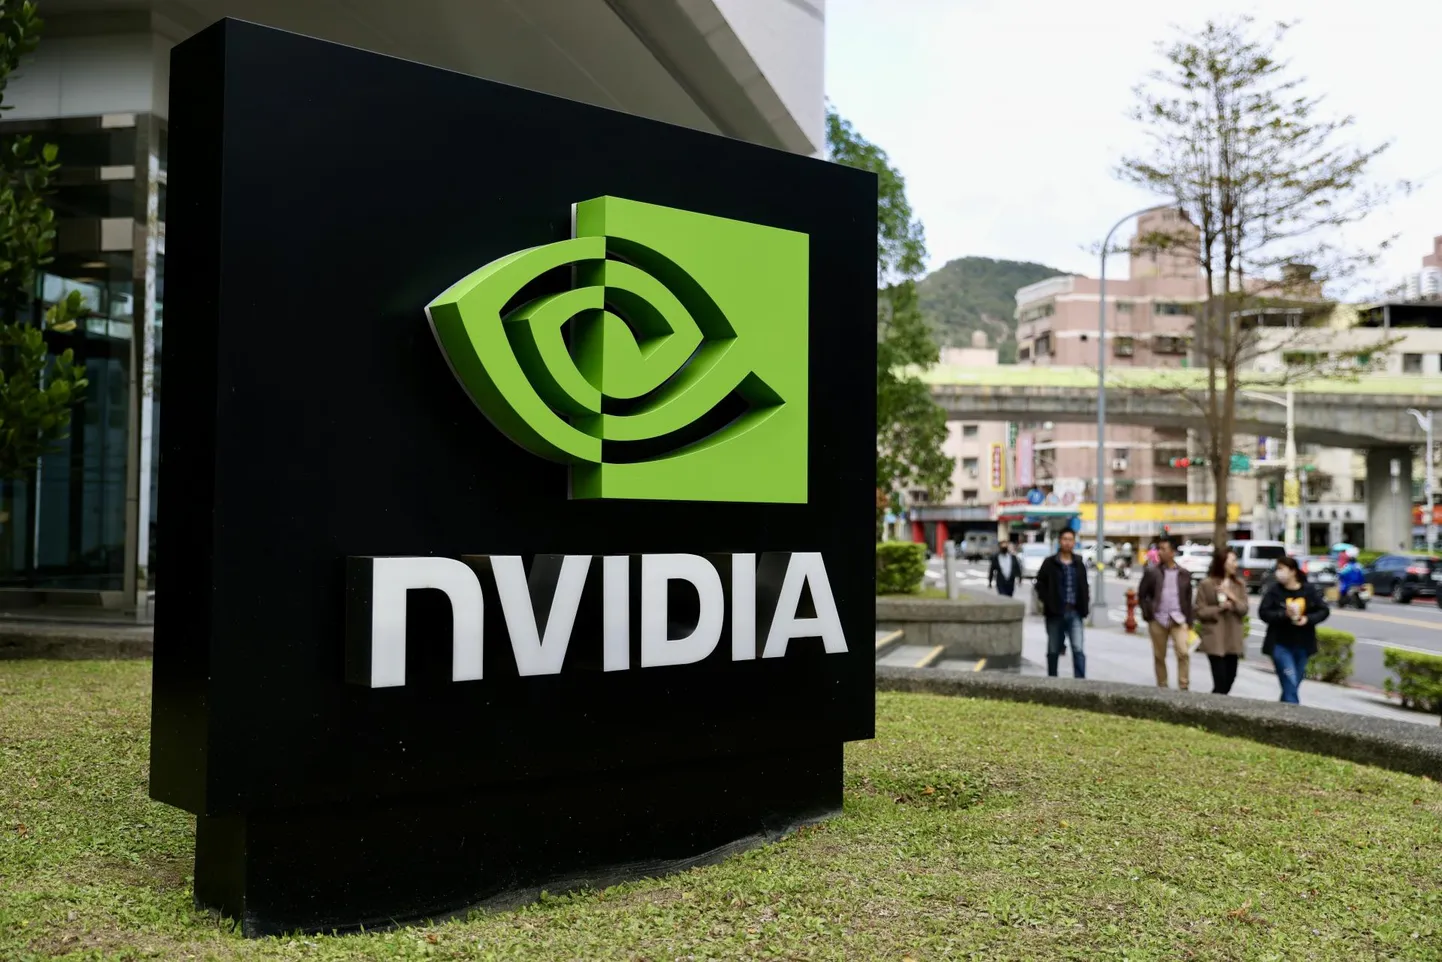 Tehisintellekti tarbeks sobivaid kiipe valmistava USA tootja Nvidia logo Taipeis.